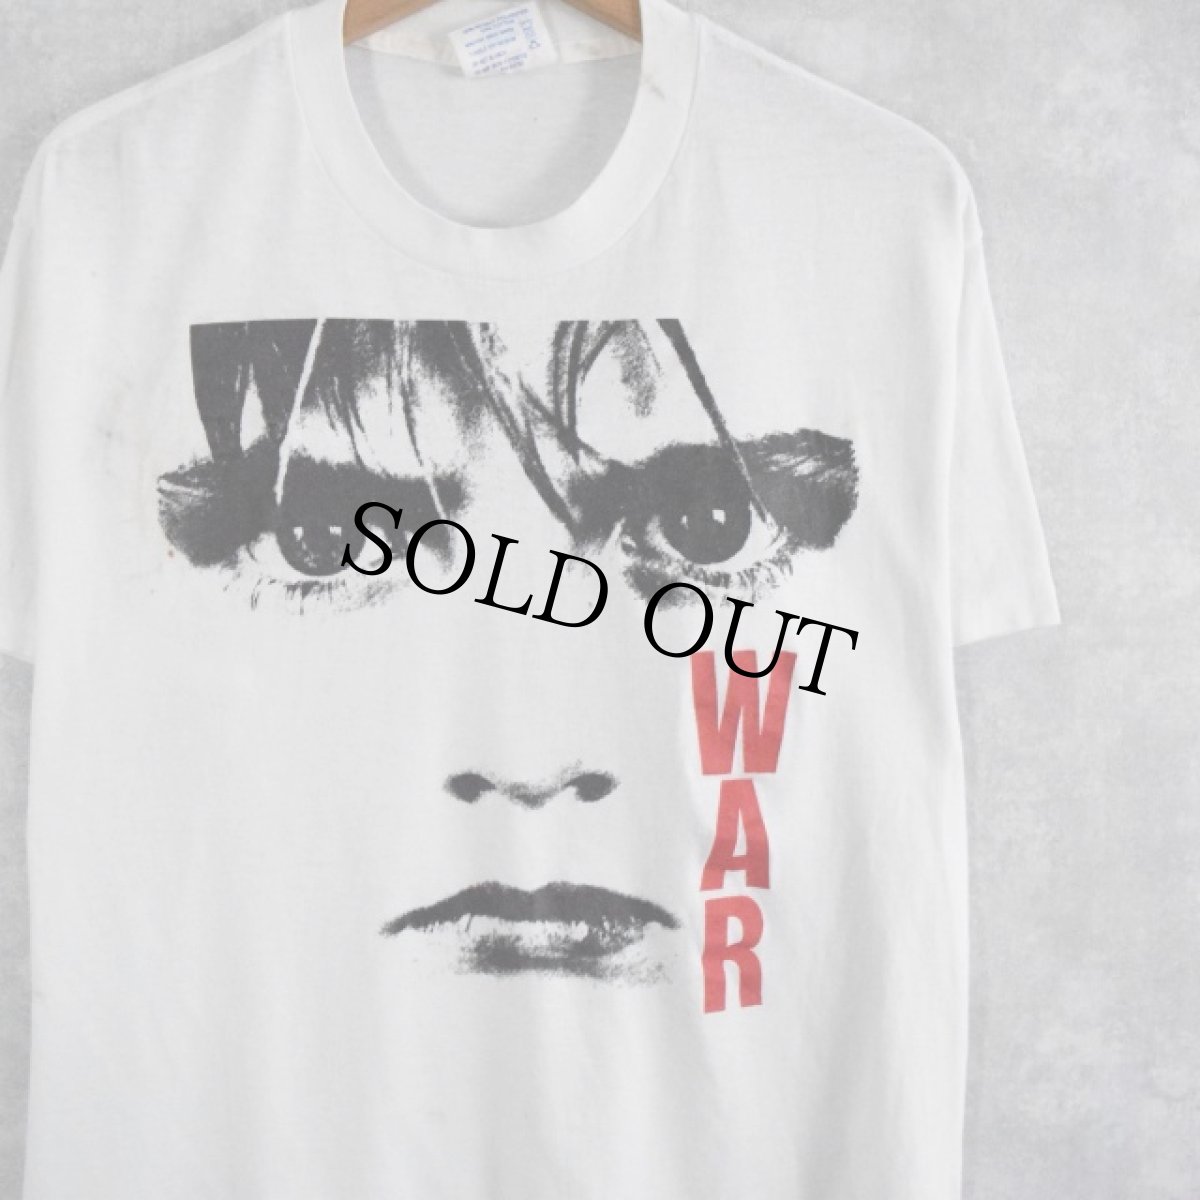 画像1: 80's U2 USA製 "WAR" ロックバンドプリントTシャツ XL (1)